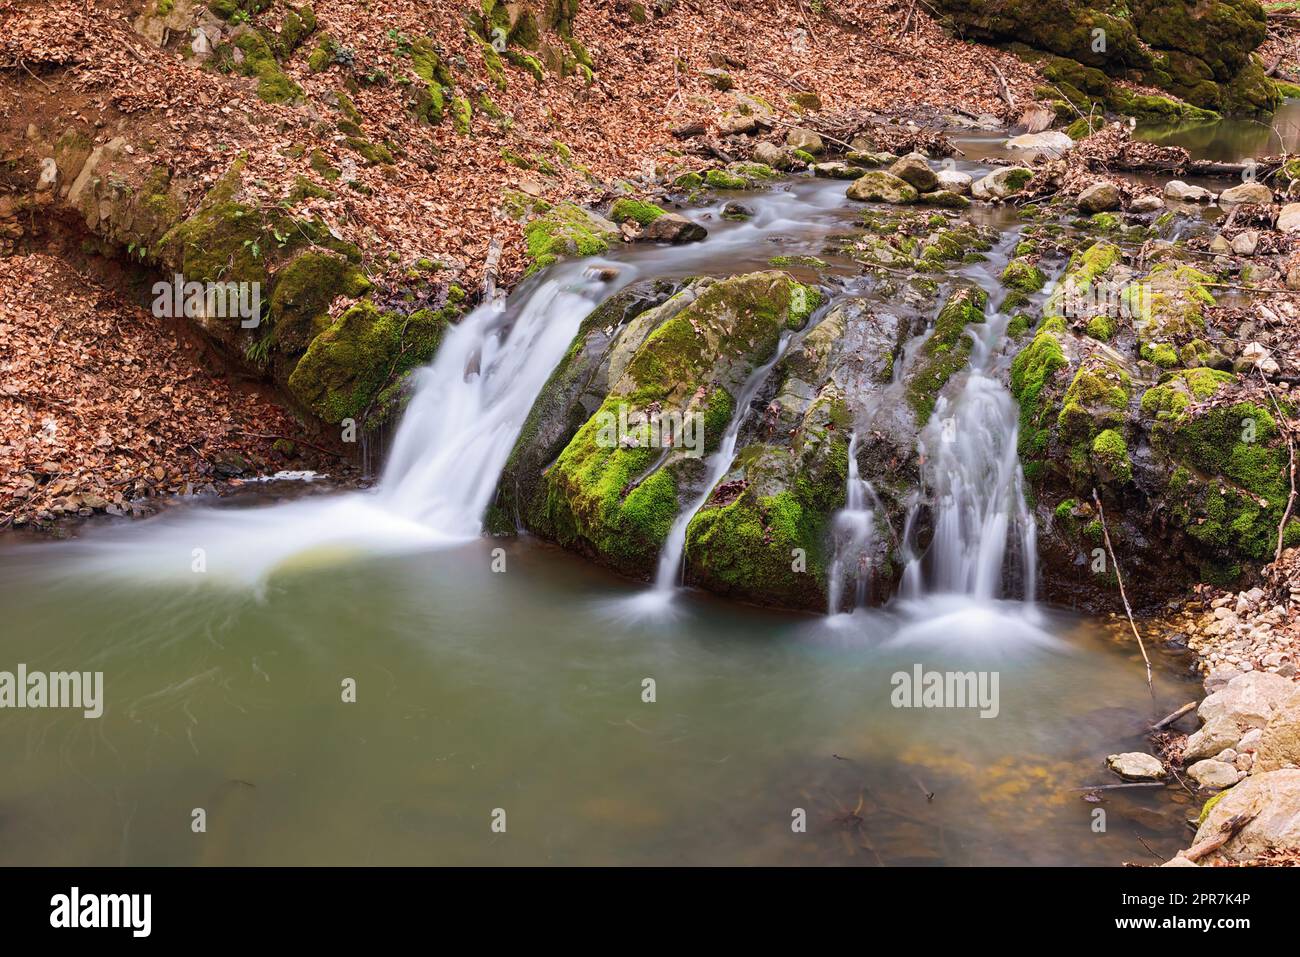 Belle cascade profondément dans les bois des montagnes Apuseni; belle gorge de Borzesti, une zone naturelle en Transylvanie Banque D'Images